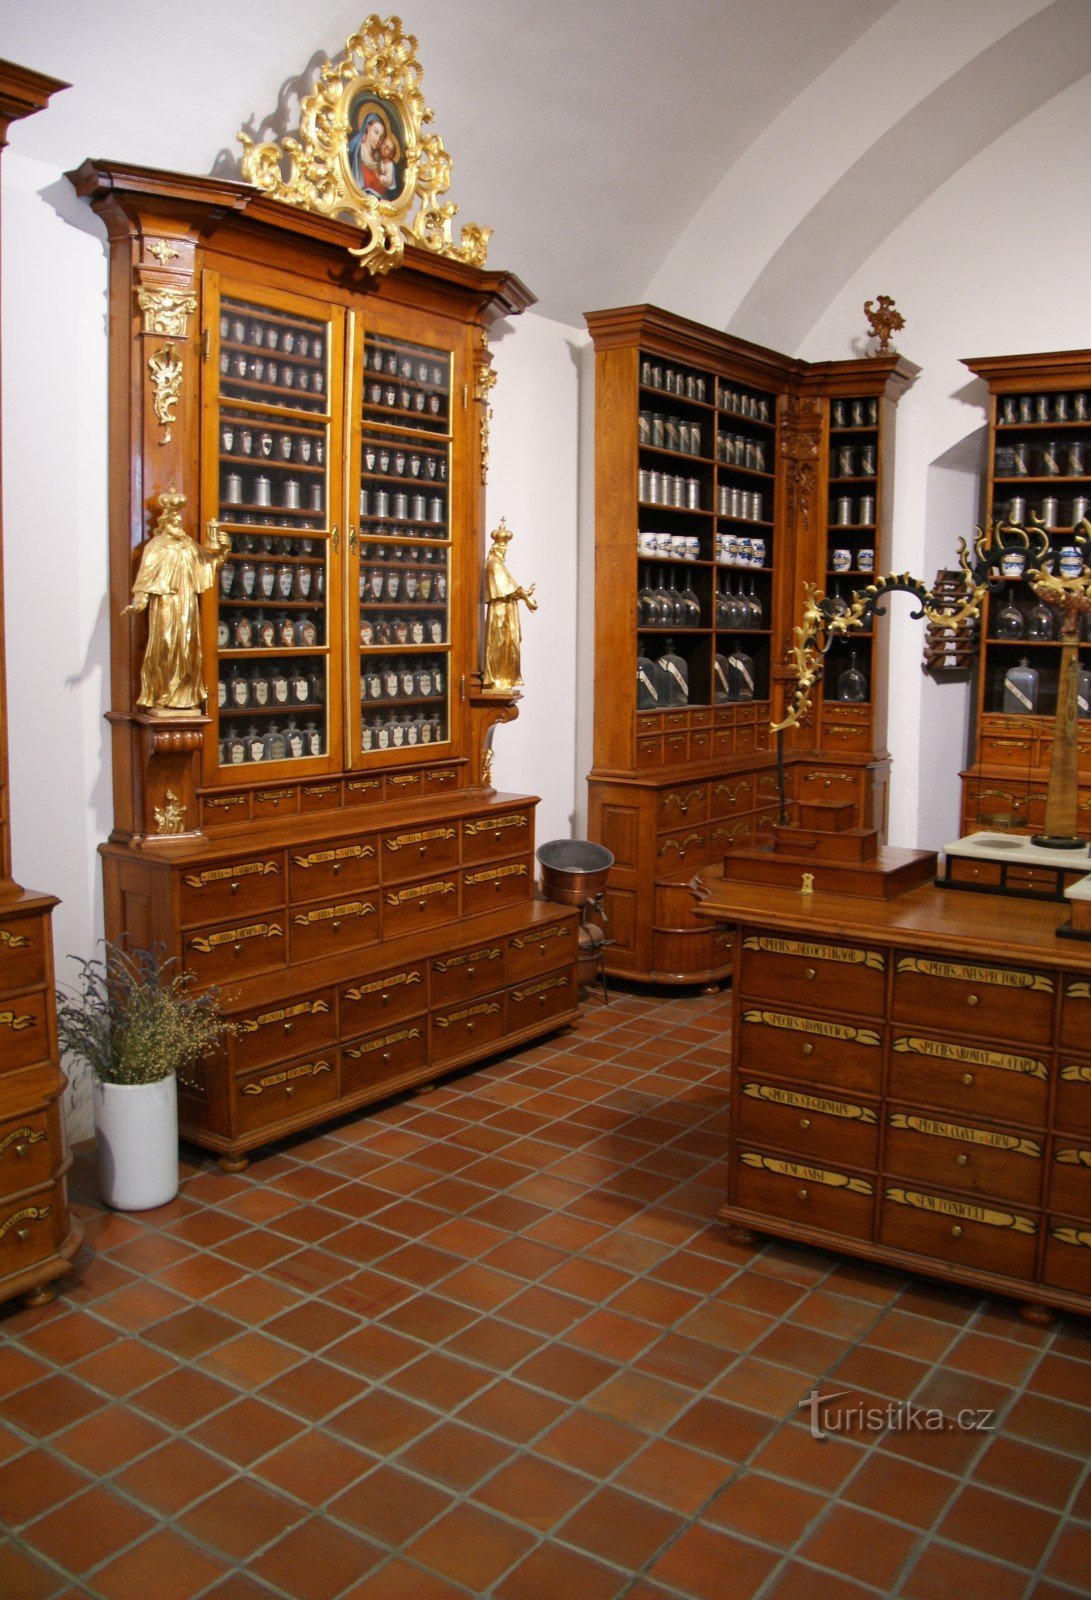 Brno (Špilberk) – farmacie barocă